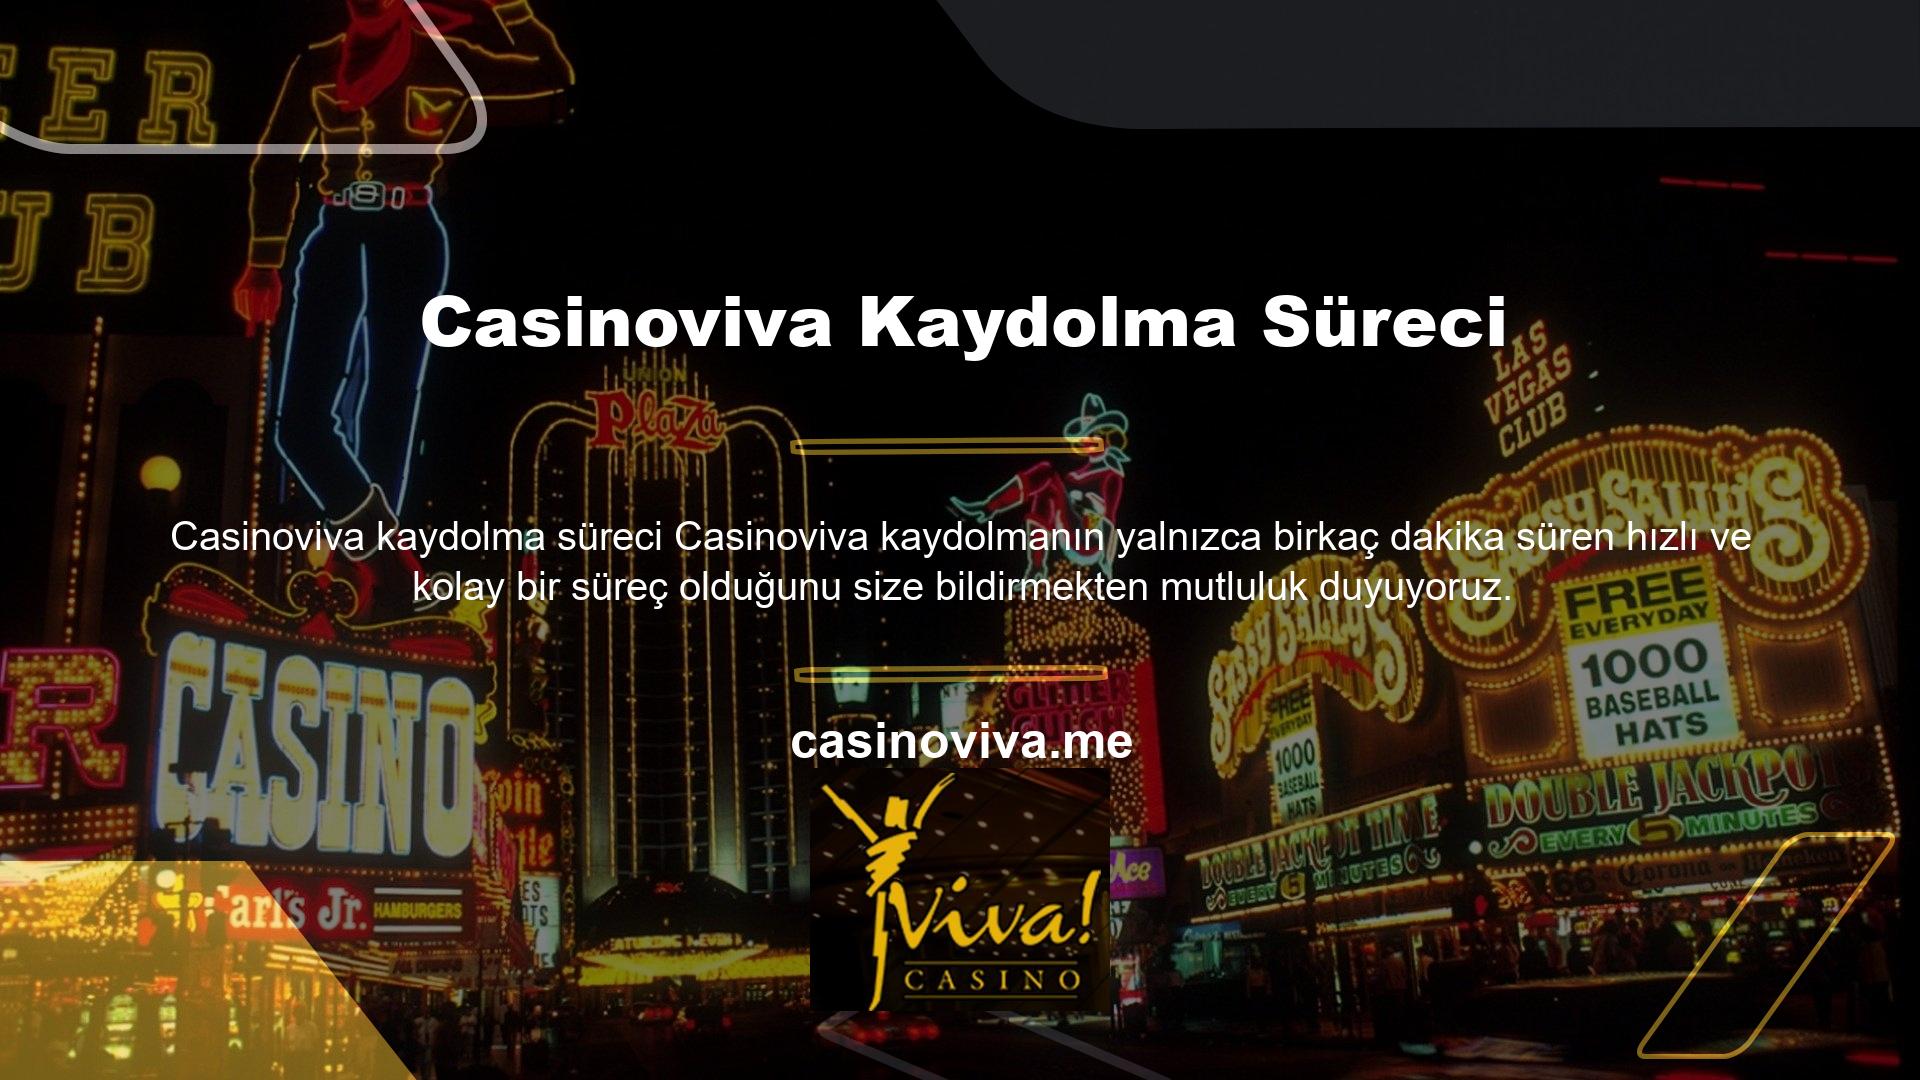 Casinoviva, uzun süredir Türk Casino pazarının önde gelen oyuncularından biri olup, müşterilerine kazanma fırsatı sunmaktadır